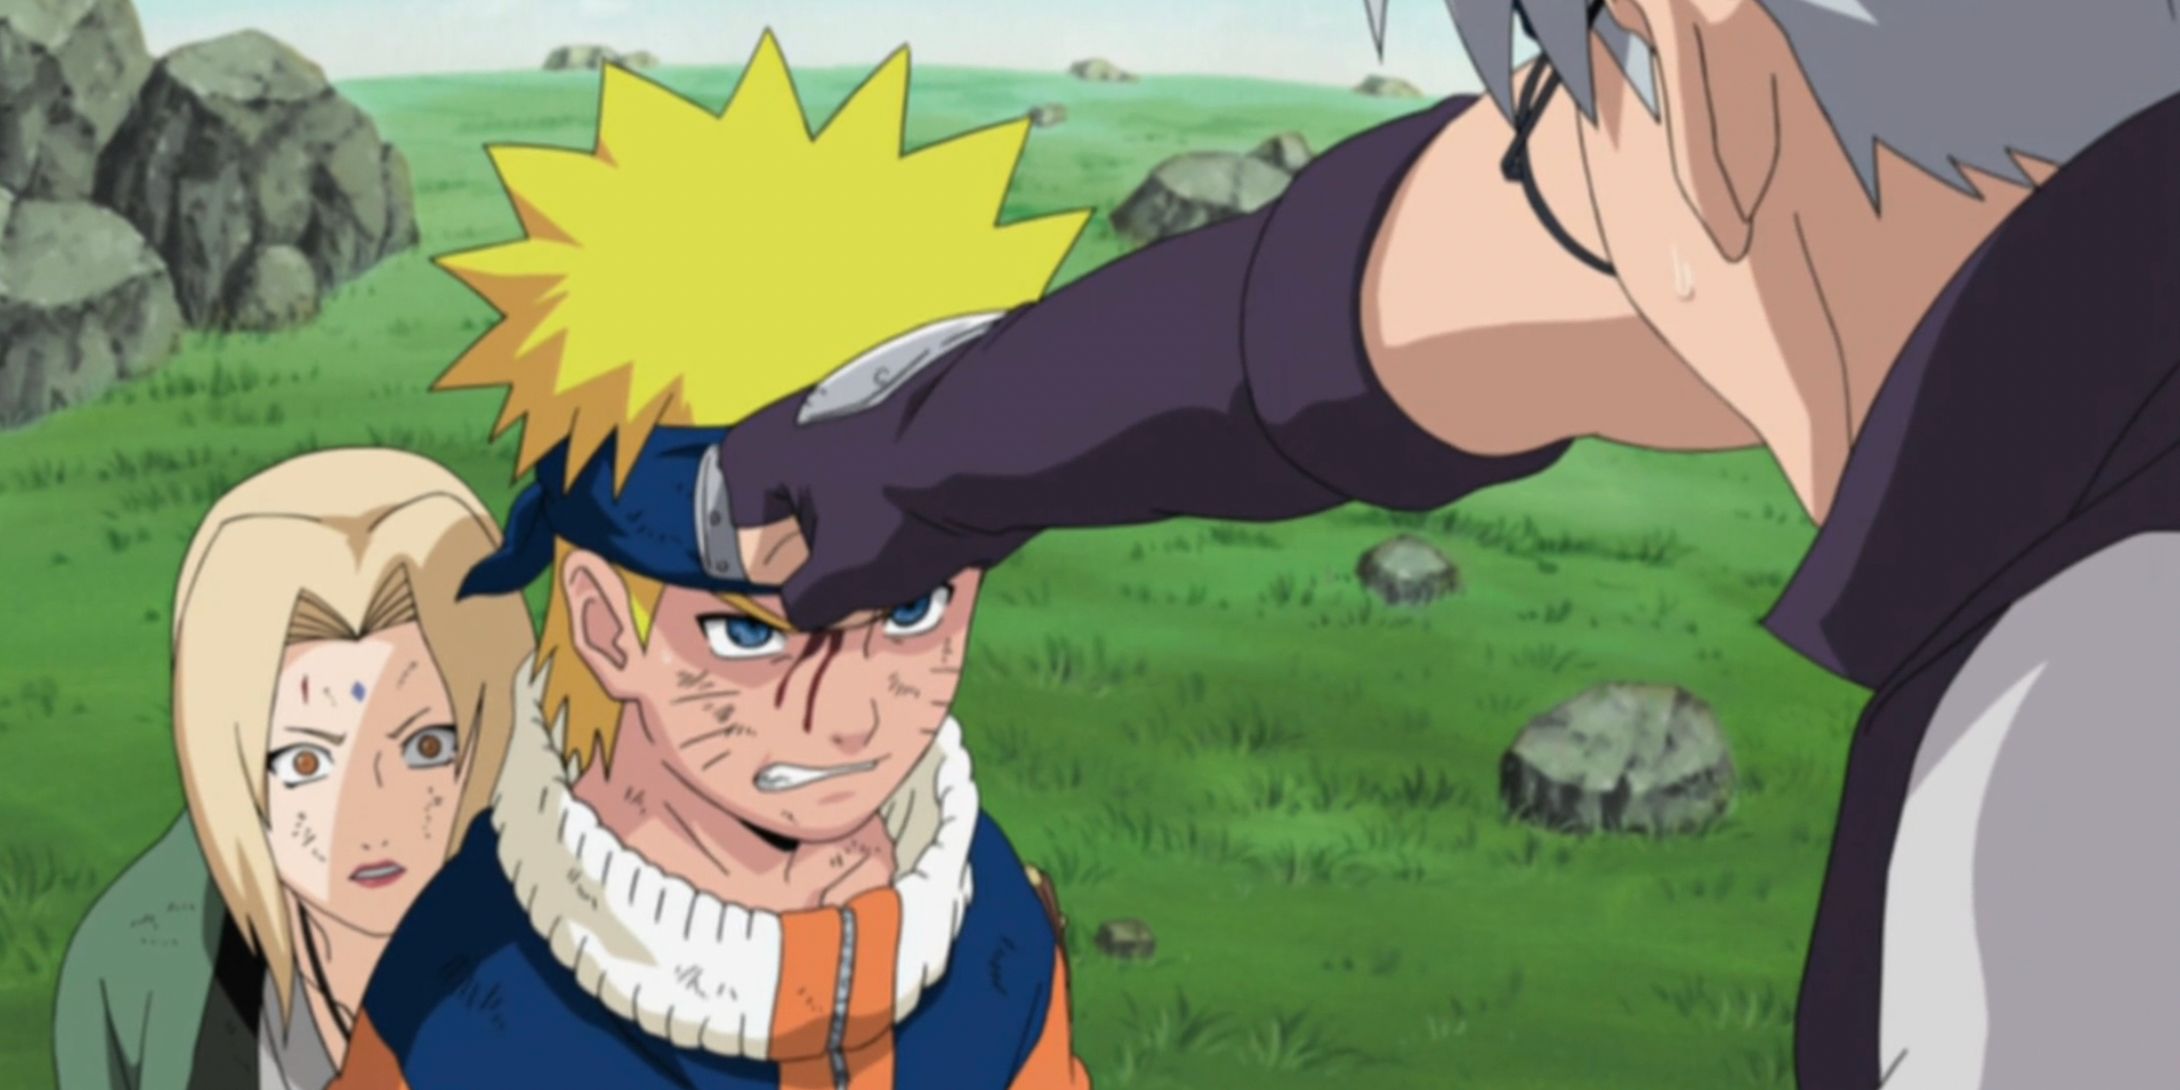 Naruto protects Tsunade from Kabuto in the Naruto anime